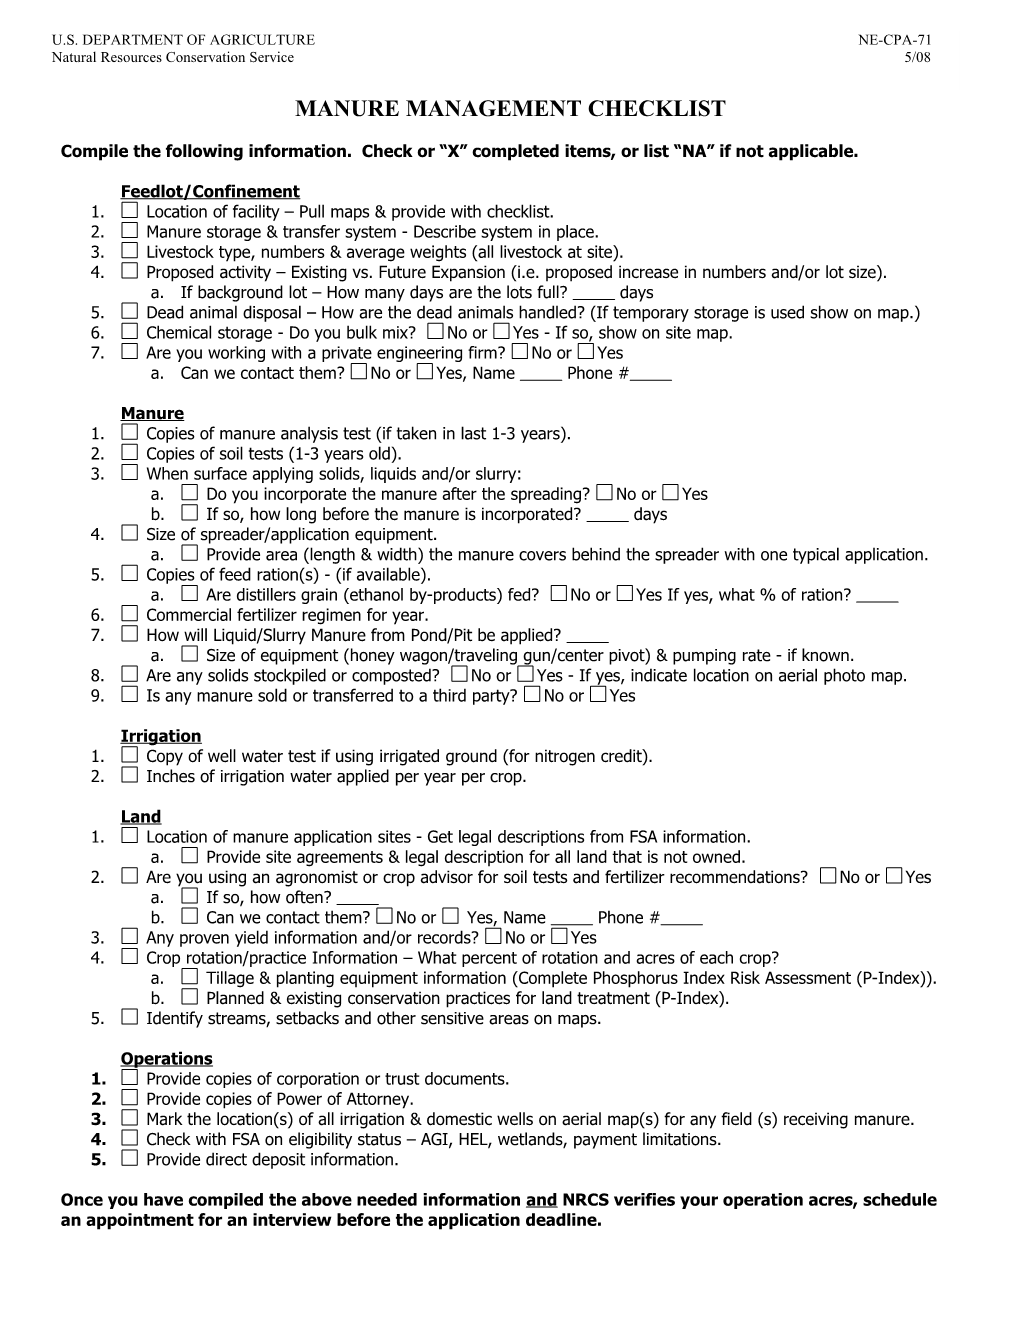 Ne-Cpa-71 Manure Management Checklist